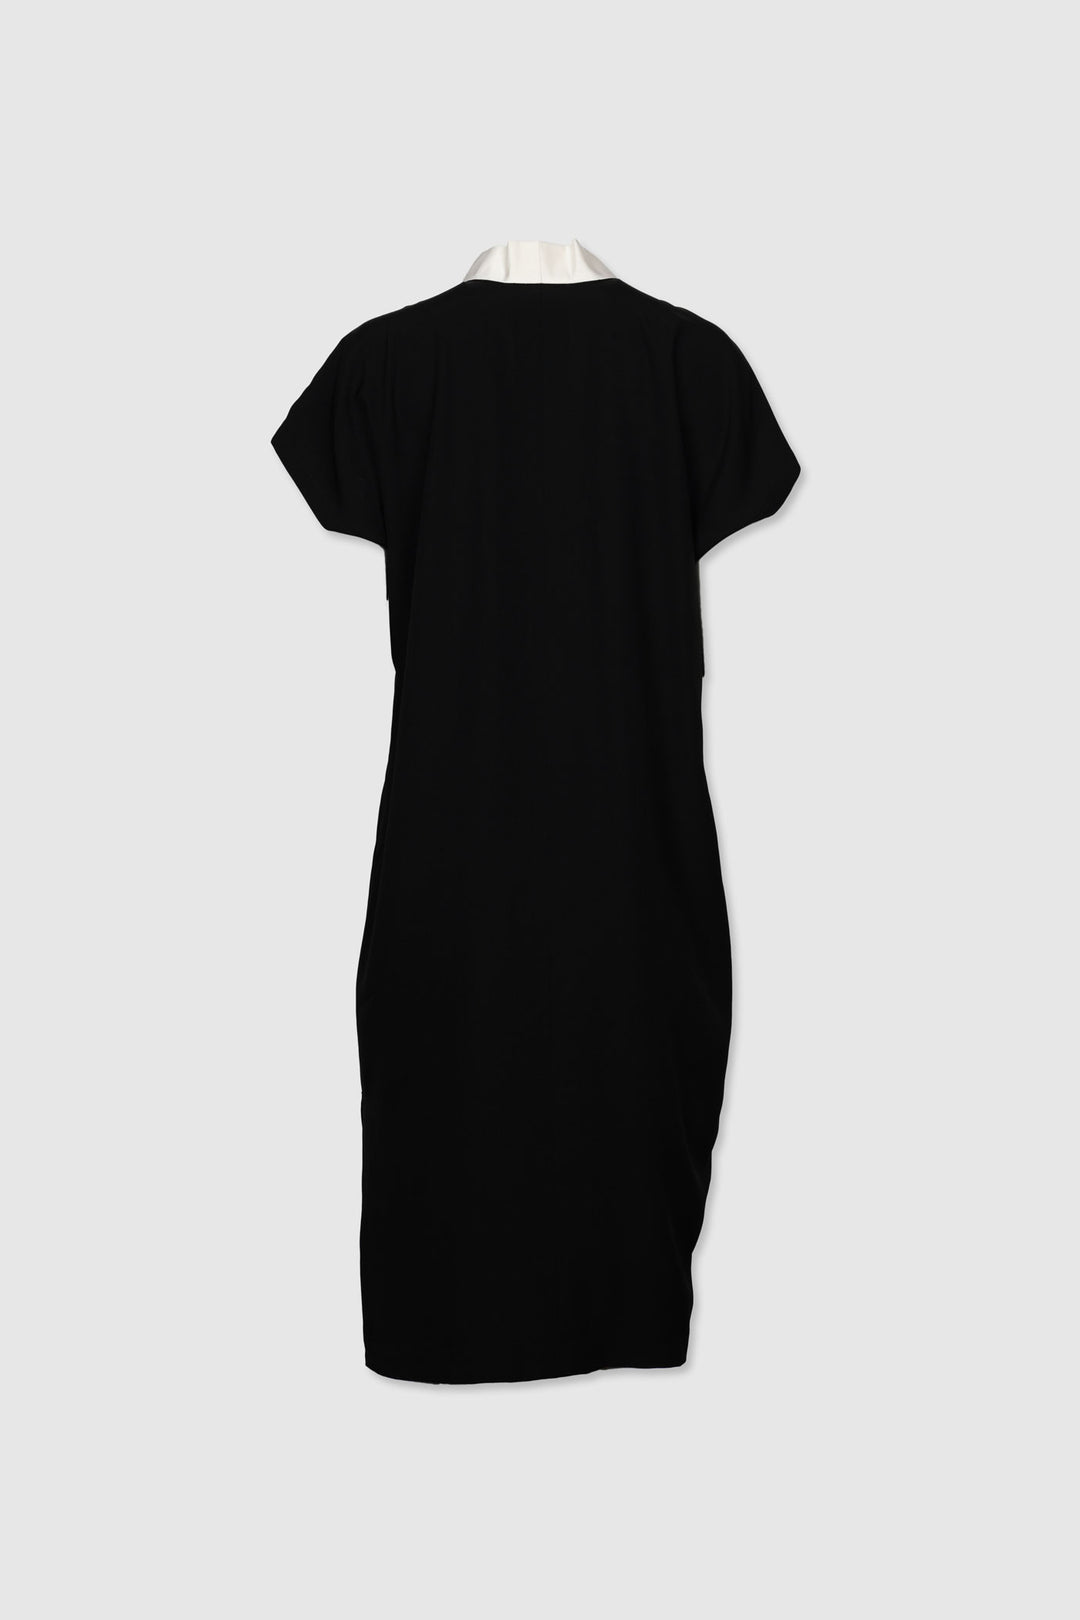 Black & White Silk Shift Dress | Canto Notturno